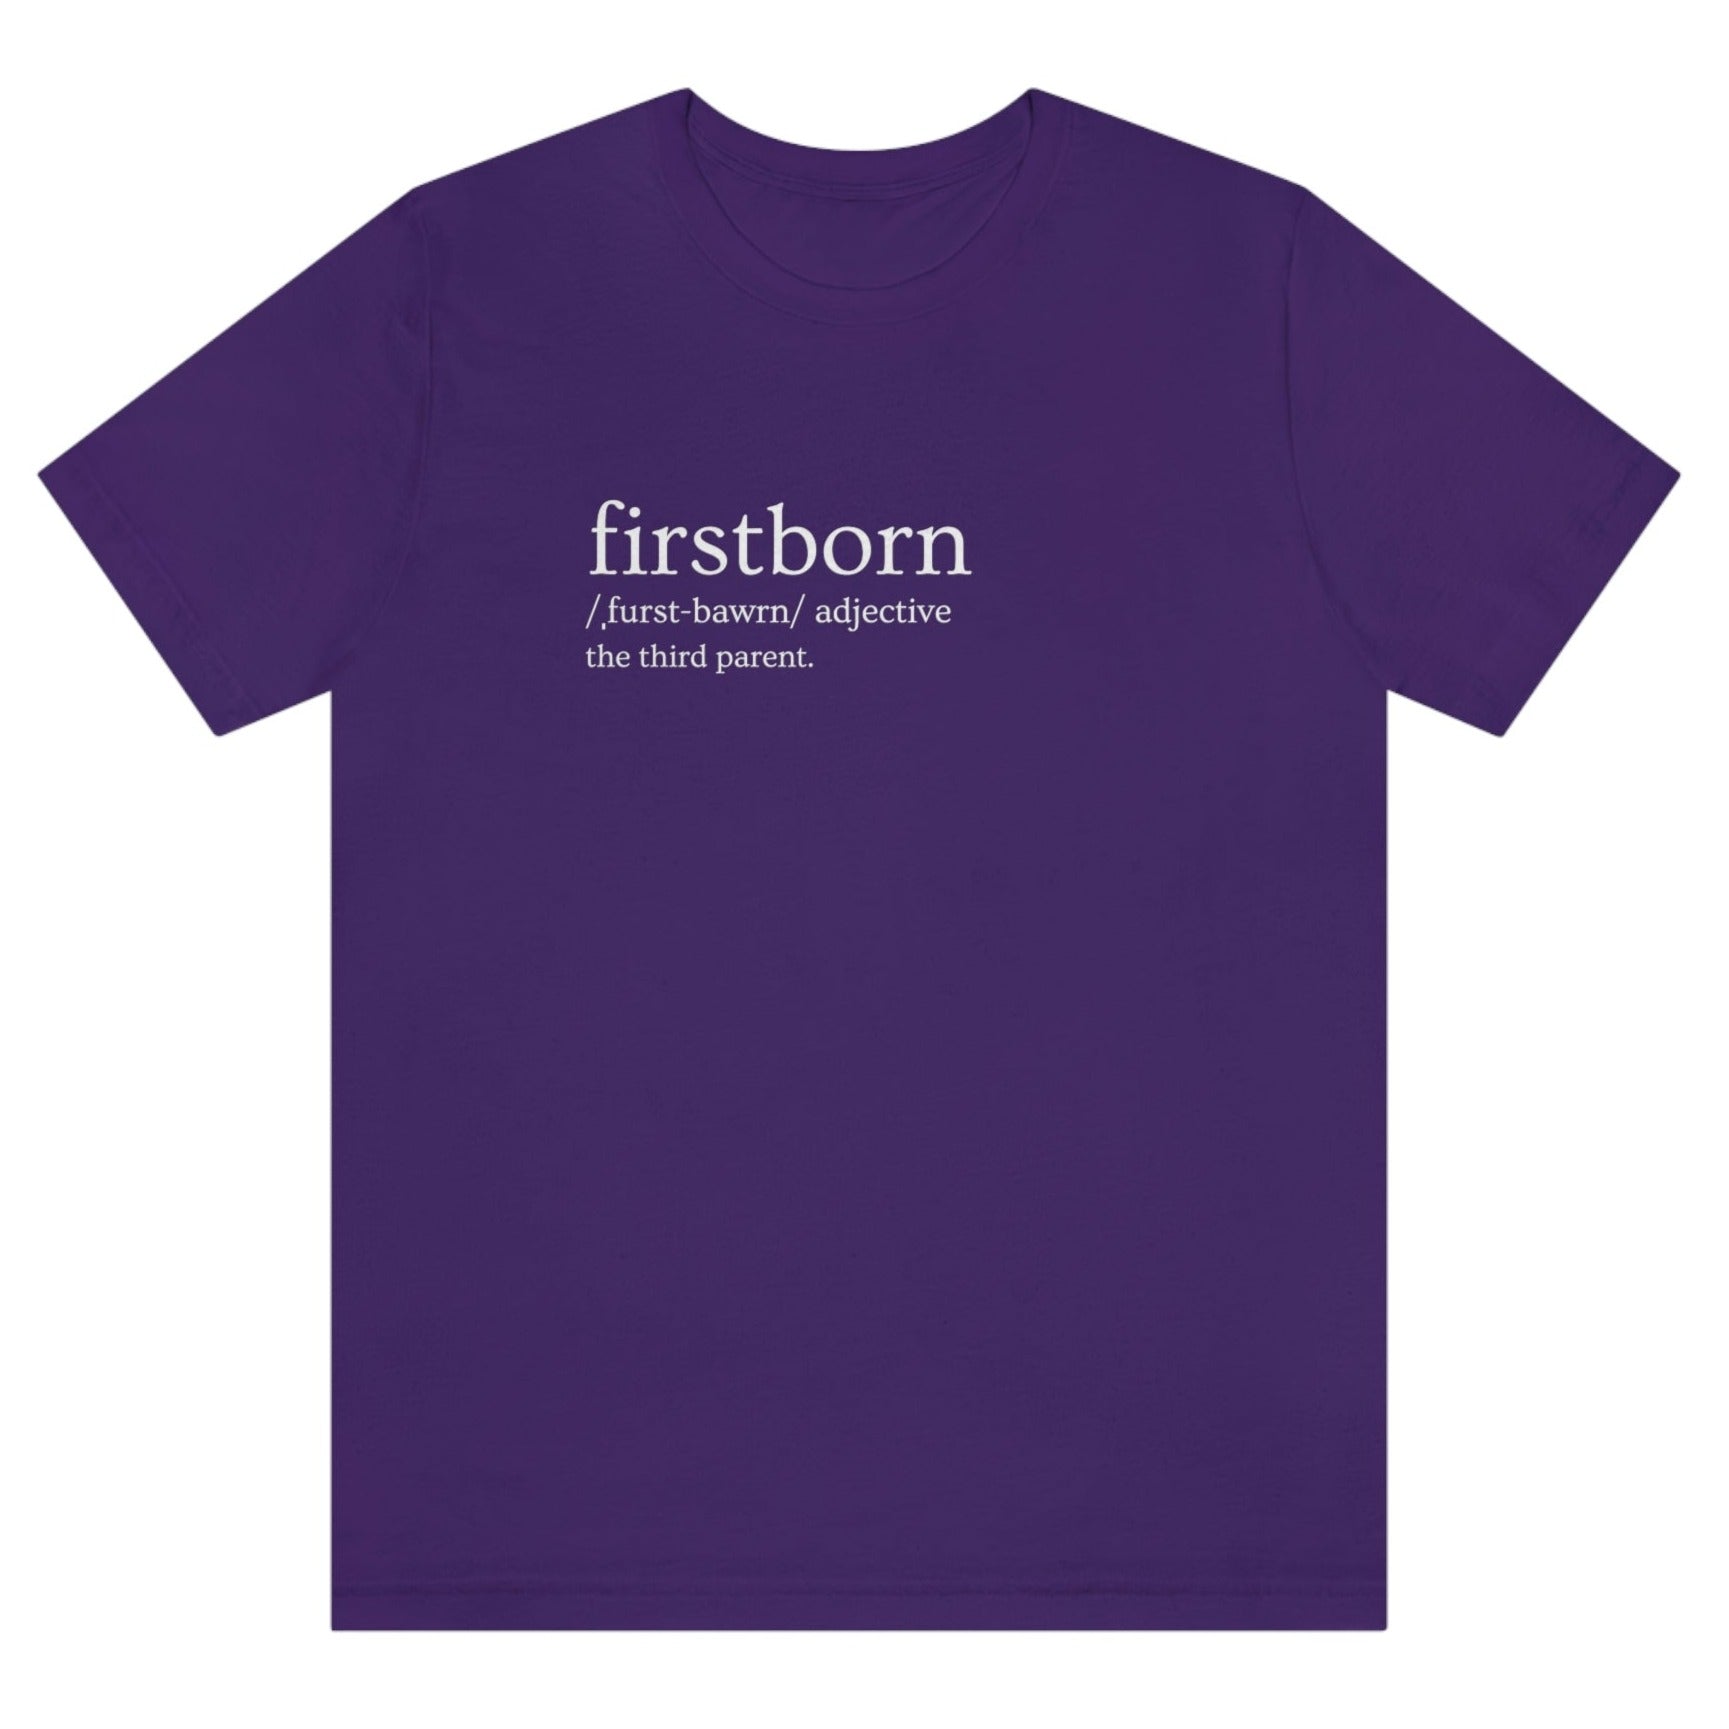 firstborn-the-third-parent-team-purple-t-shirt